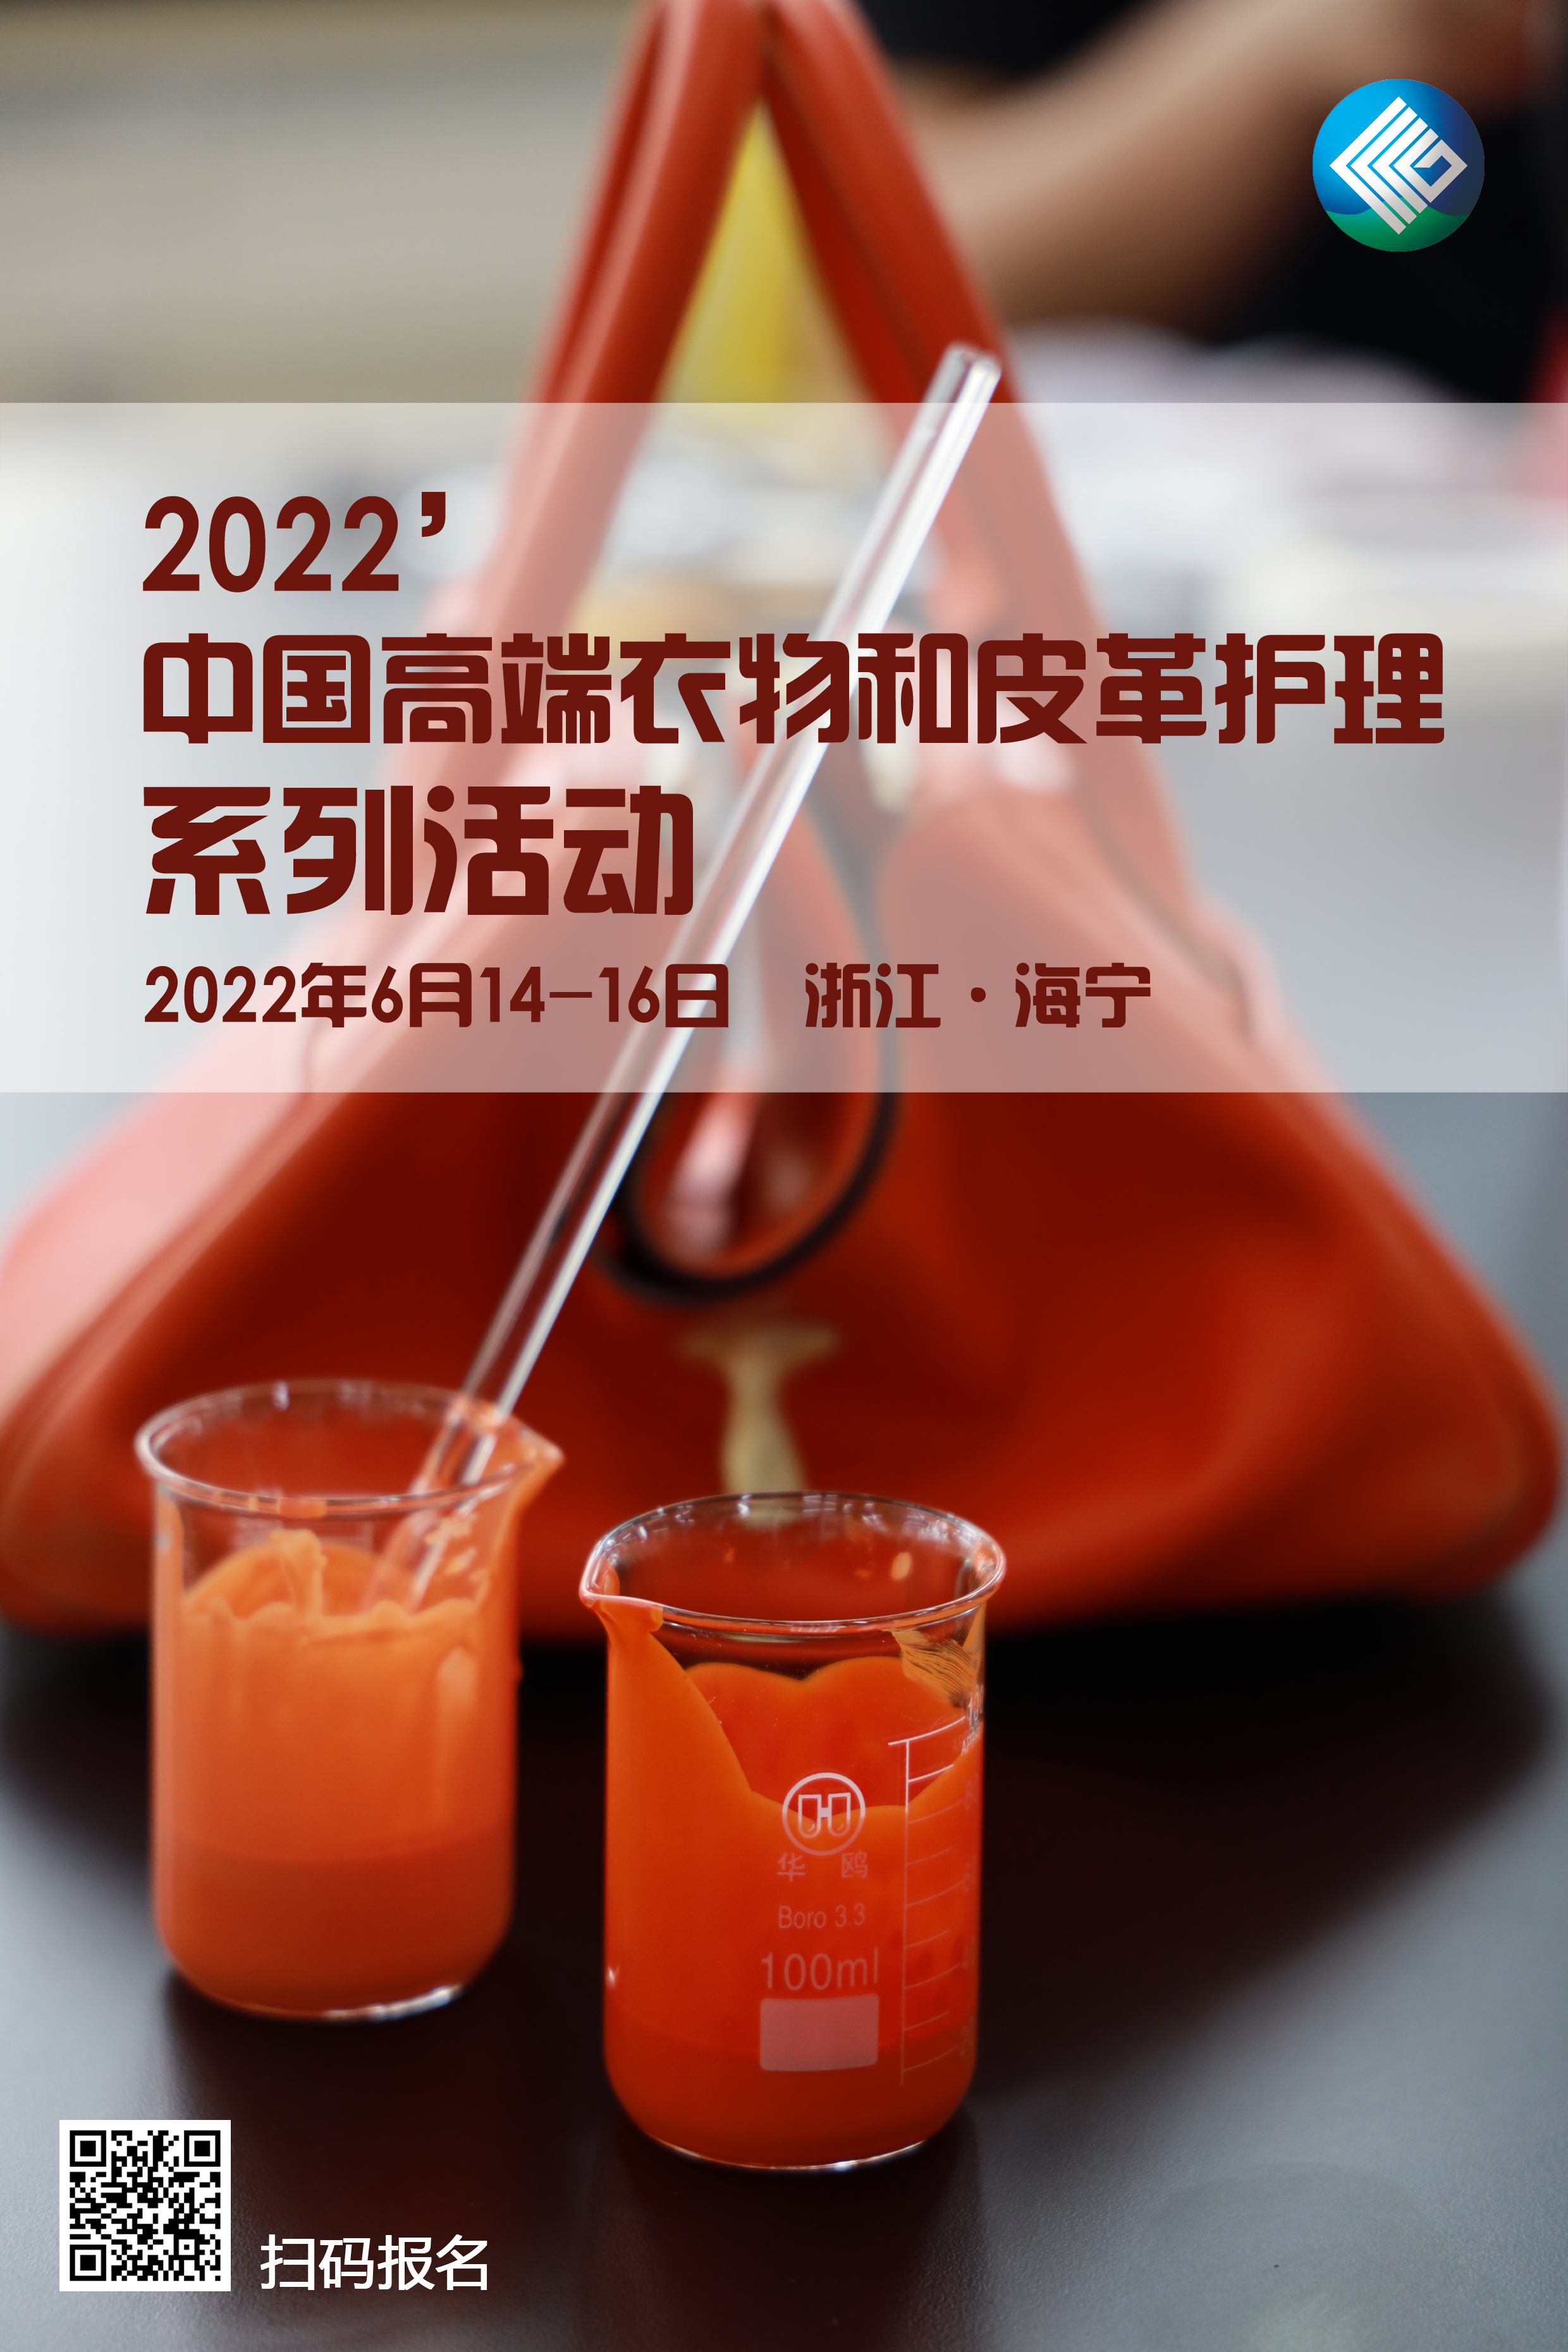 【重要活動】中國高端衣物和皮革護理系列活動將于6月在海寧舉辦